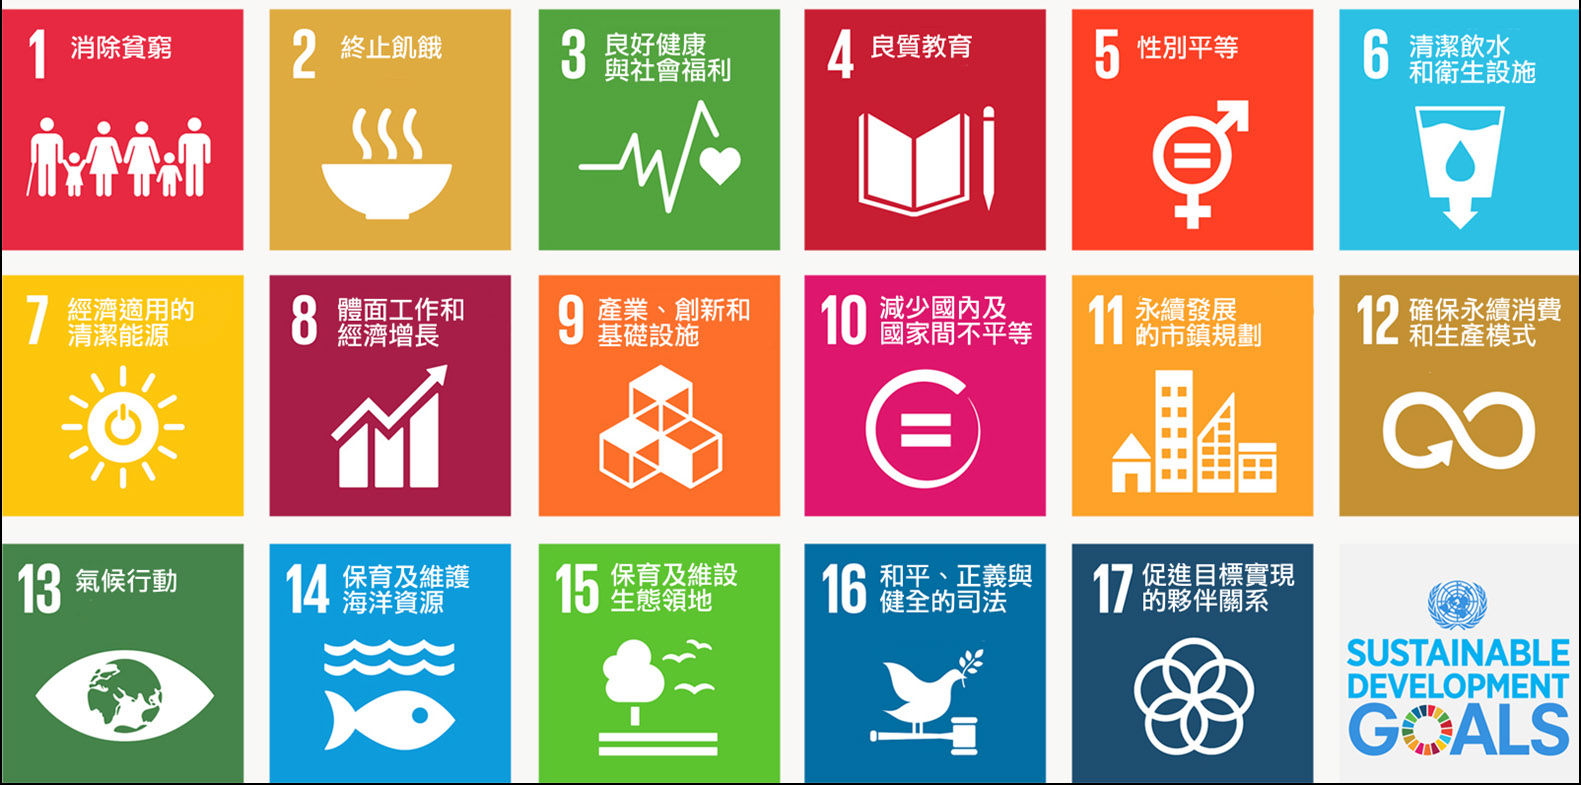 1_ 聯合國17項永續發展目標